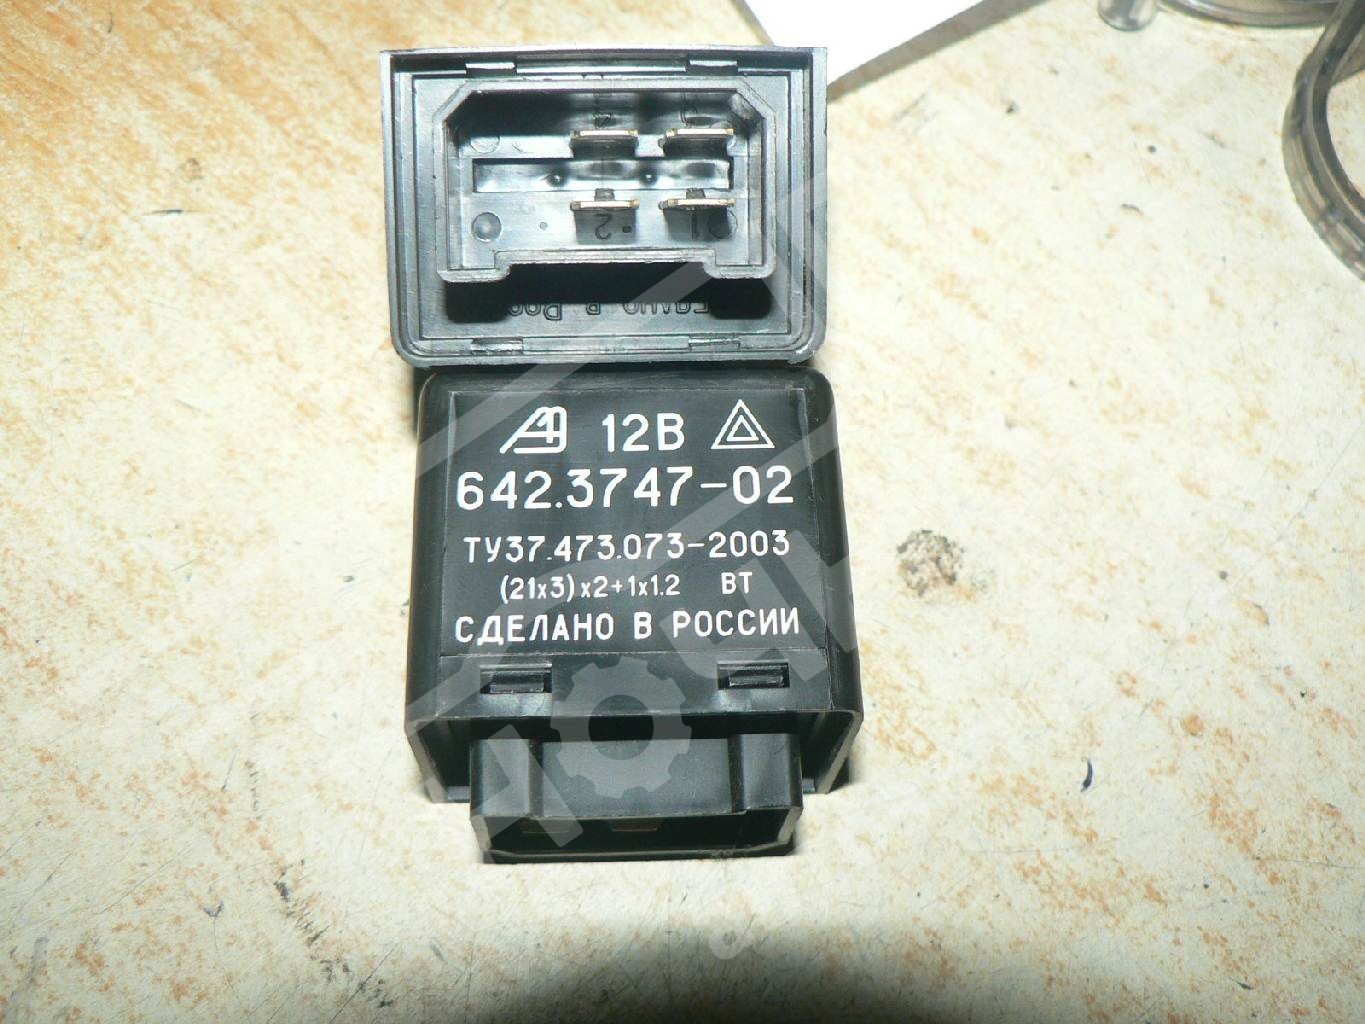 Реле поворотов ГАЗ 33104 ЕВРО-3 (12В) (Автоэлектроника)